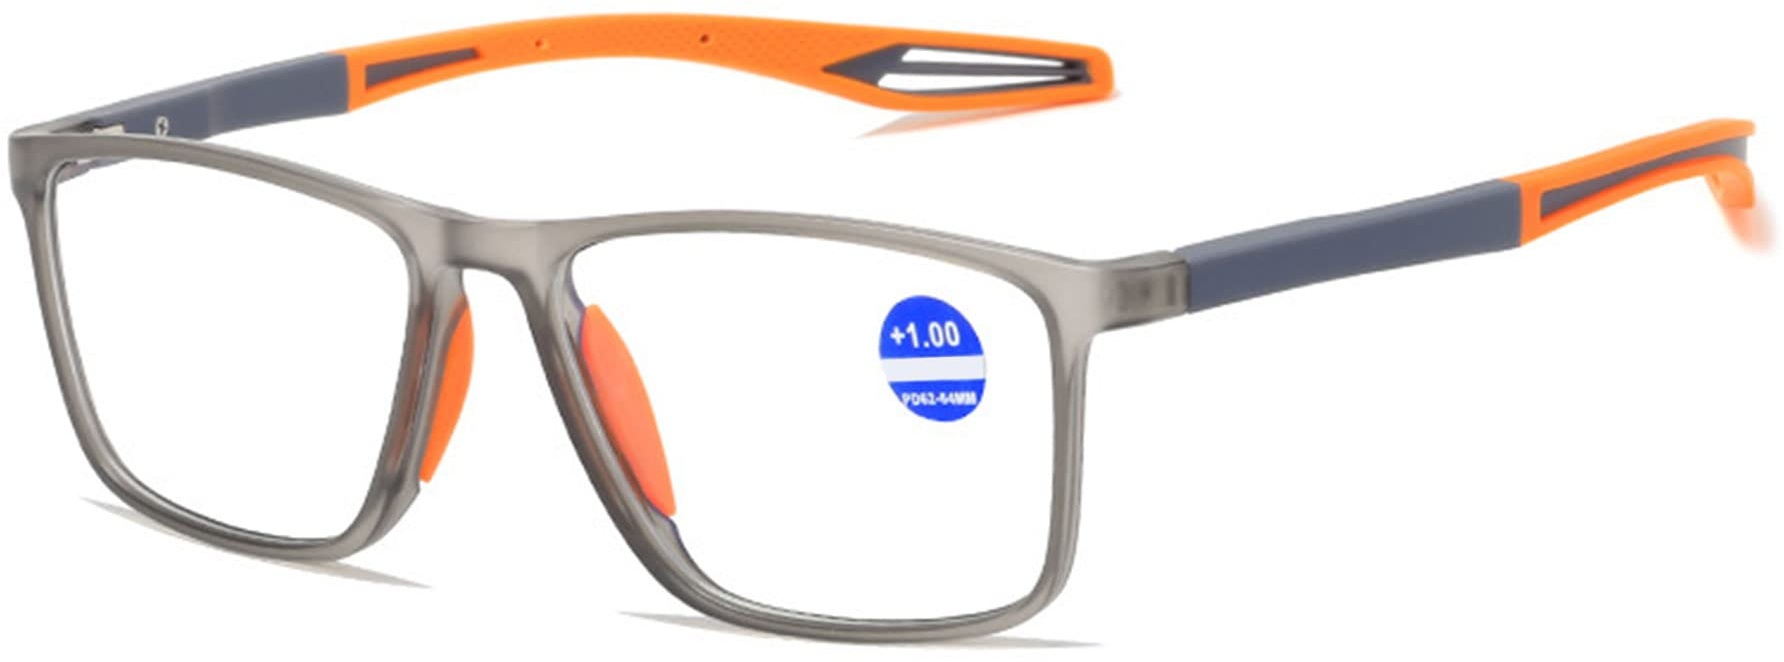 Lanomi Mode Blaulichtfilter Kurzsichtige Brille Rechteckig Flexibel Leichte UV400 Schutz Outdoor Myopia Brillen für Damen Herren Grau Rahmen Orange Arm -4.0